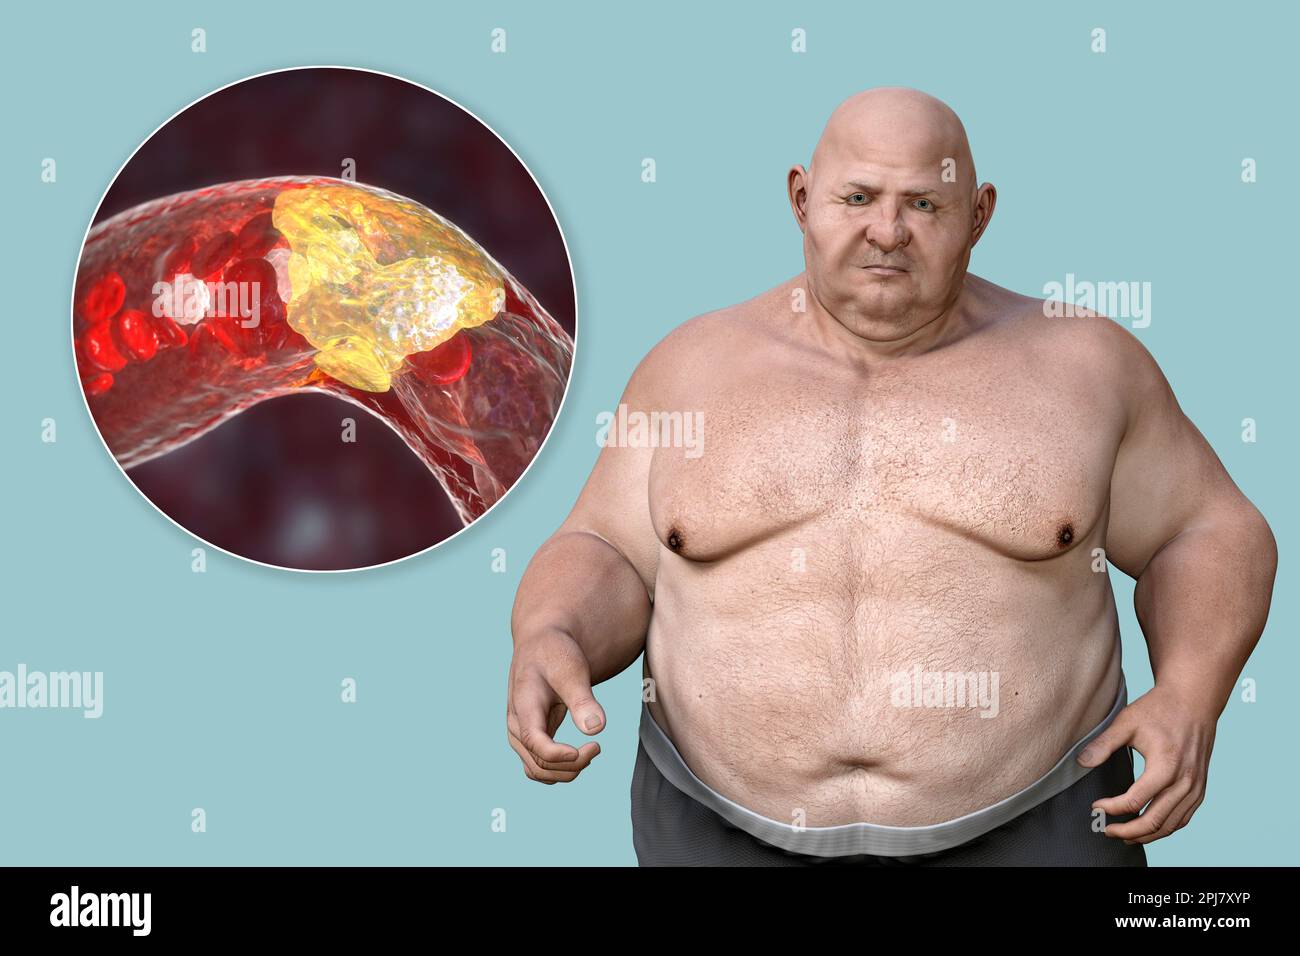 Obésité et athérosclérose, illustration conceptuelle Banque D'Images